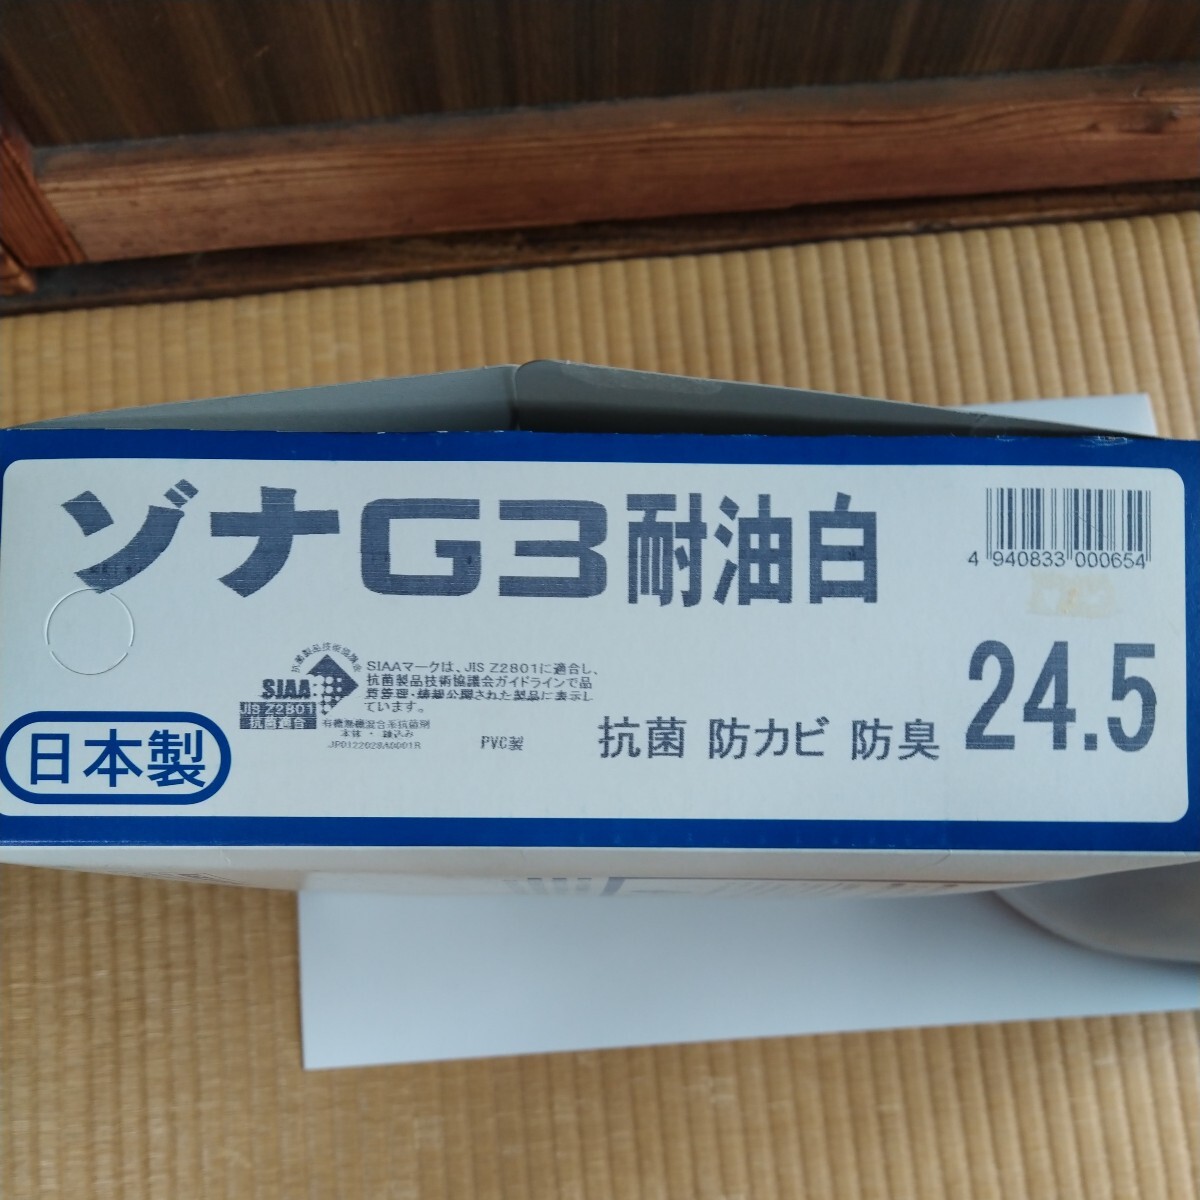 ベタベタ処分特価！日本製弘進ゴムのゾナG3耐油長靴ホワイト　未使用品ですが在庫期間が長いため表面がベタベタしているため、特別価格です